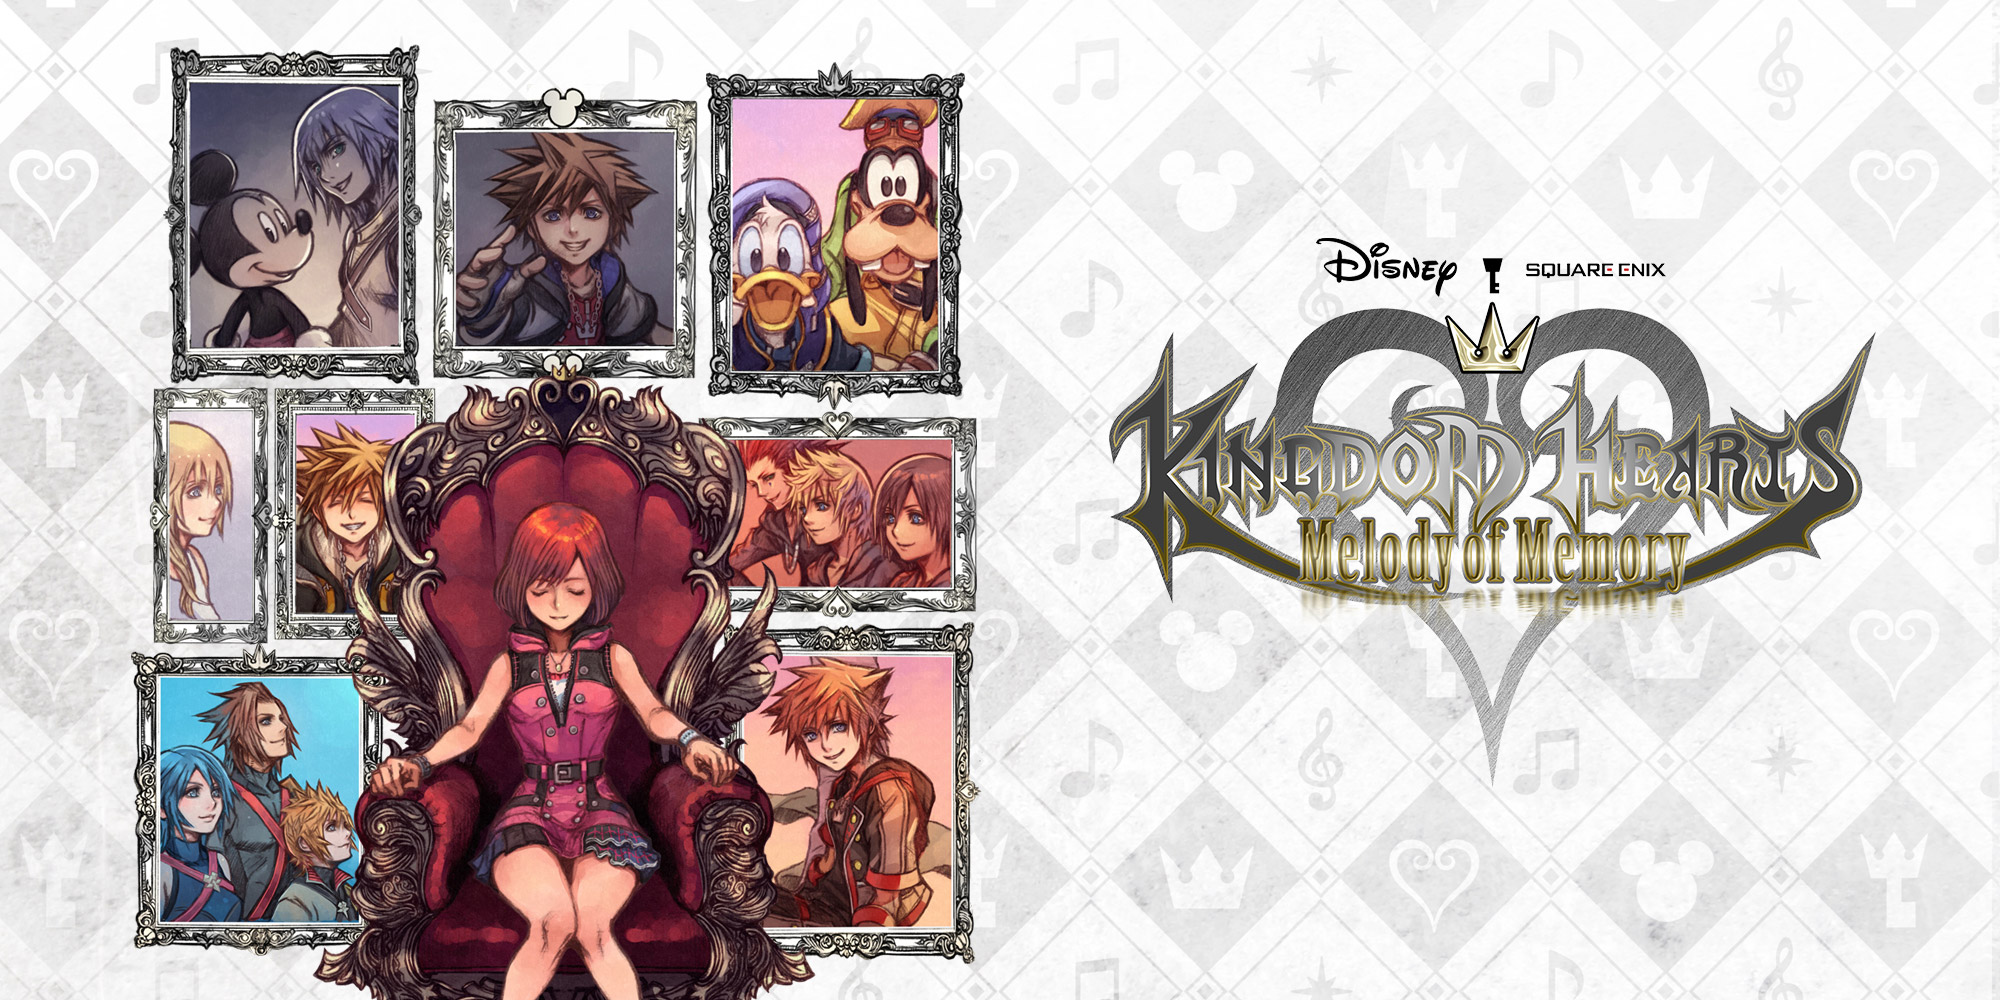 Kingdom Hearts: Melody of Memory, fausse note en vue pour Square-Enix ?